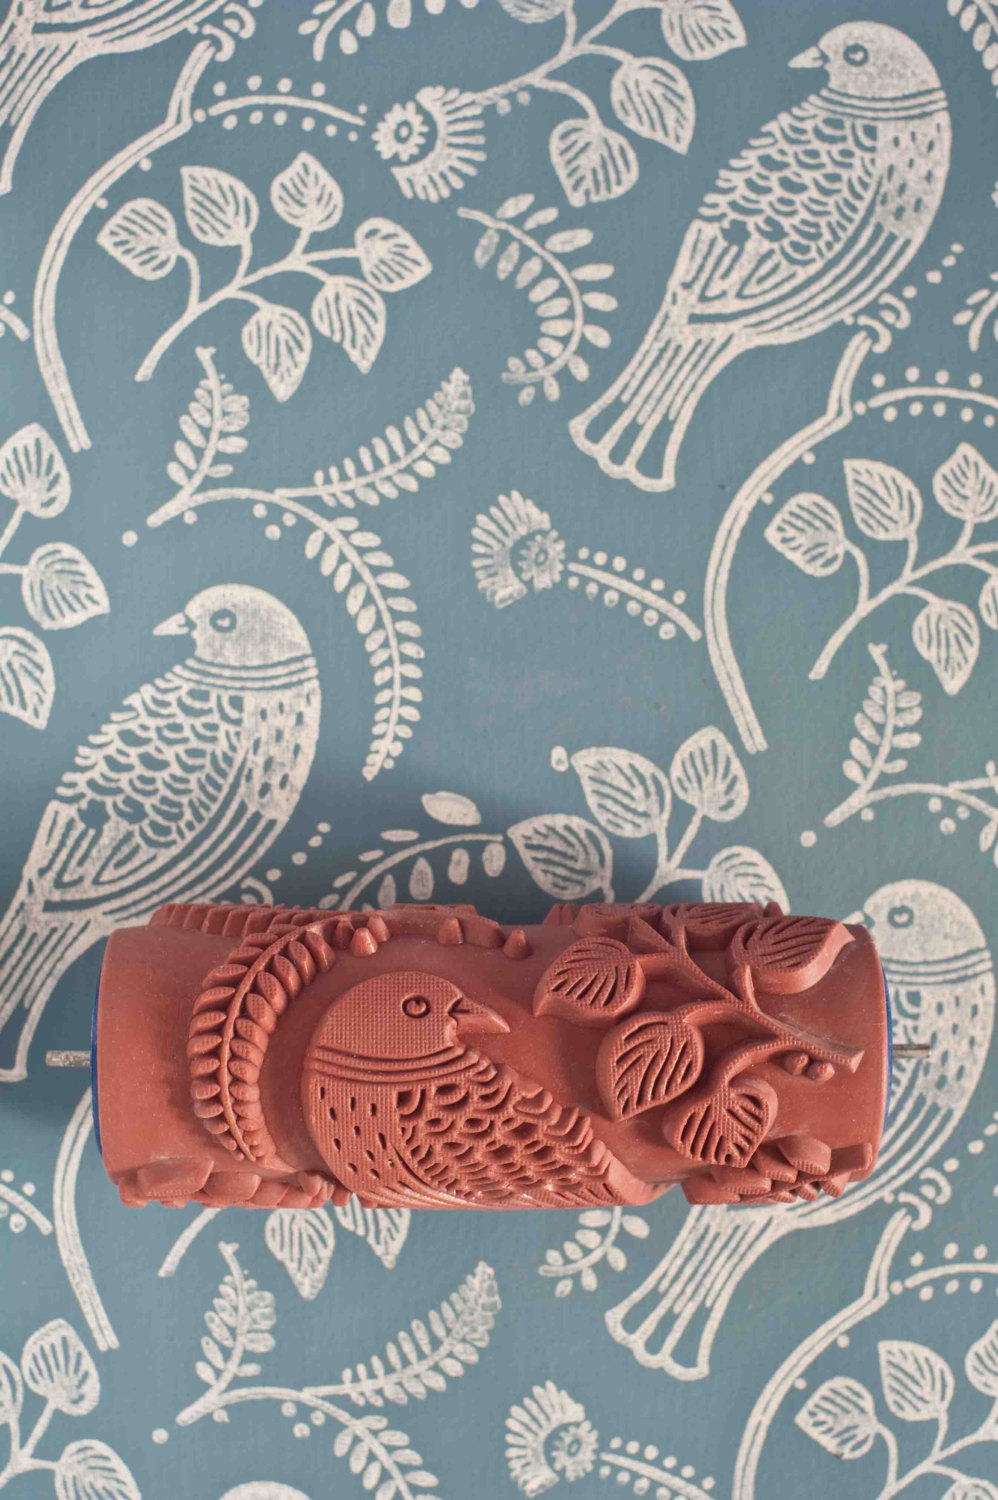 wallpaper paint roller,pattern,motif,textile,design,paisley